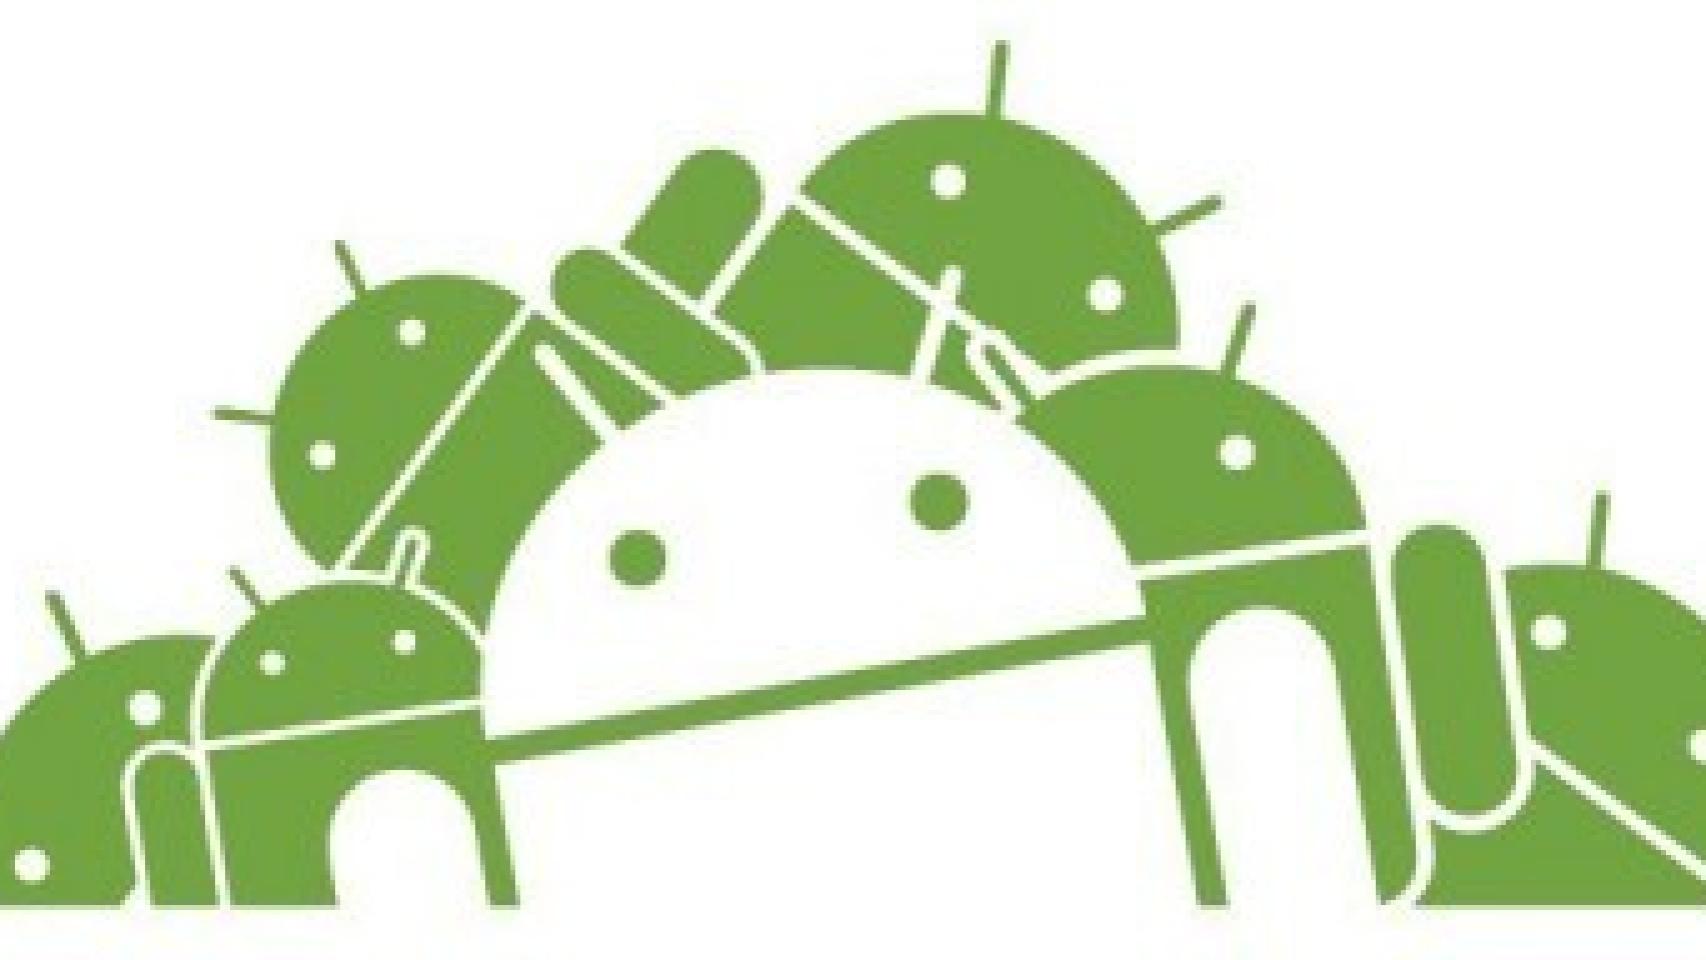 La hegemonía de Android y su evolución